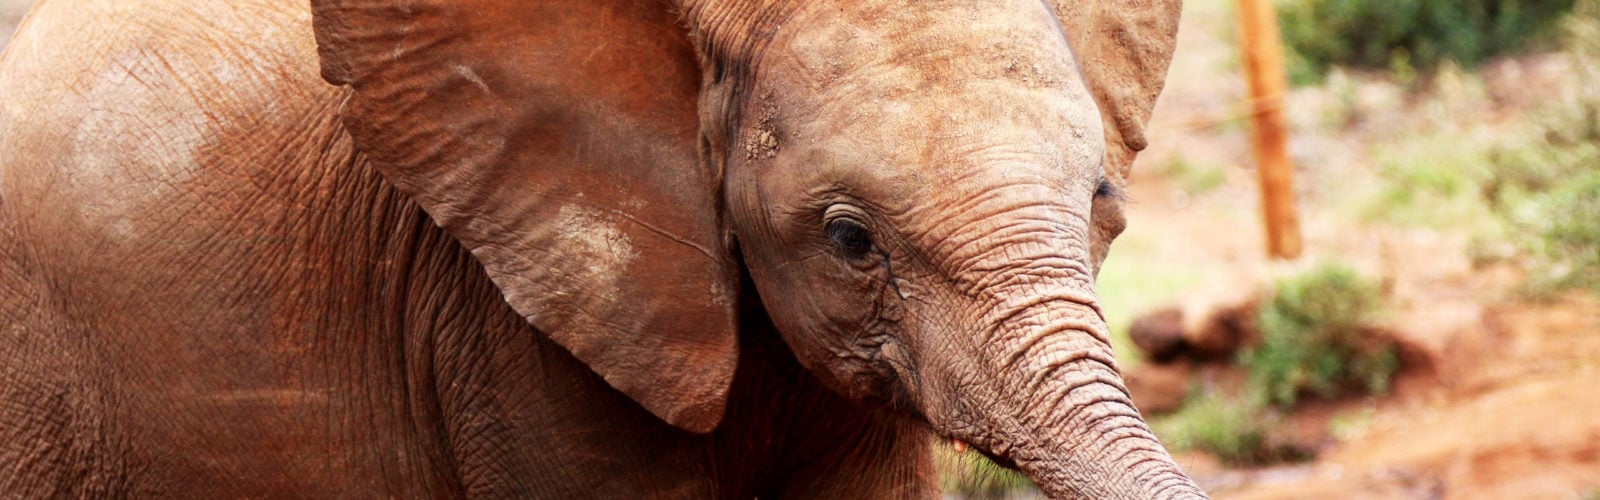 elephant-orphanage-baby